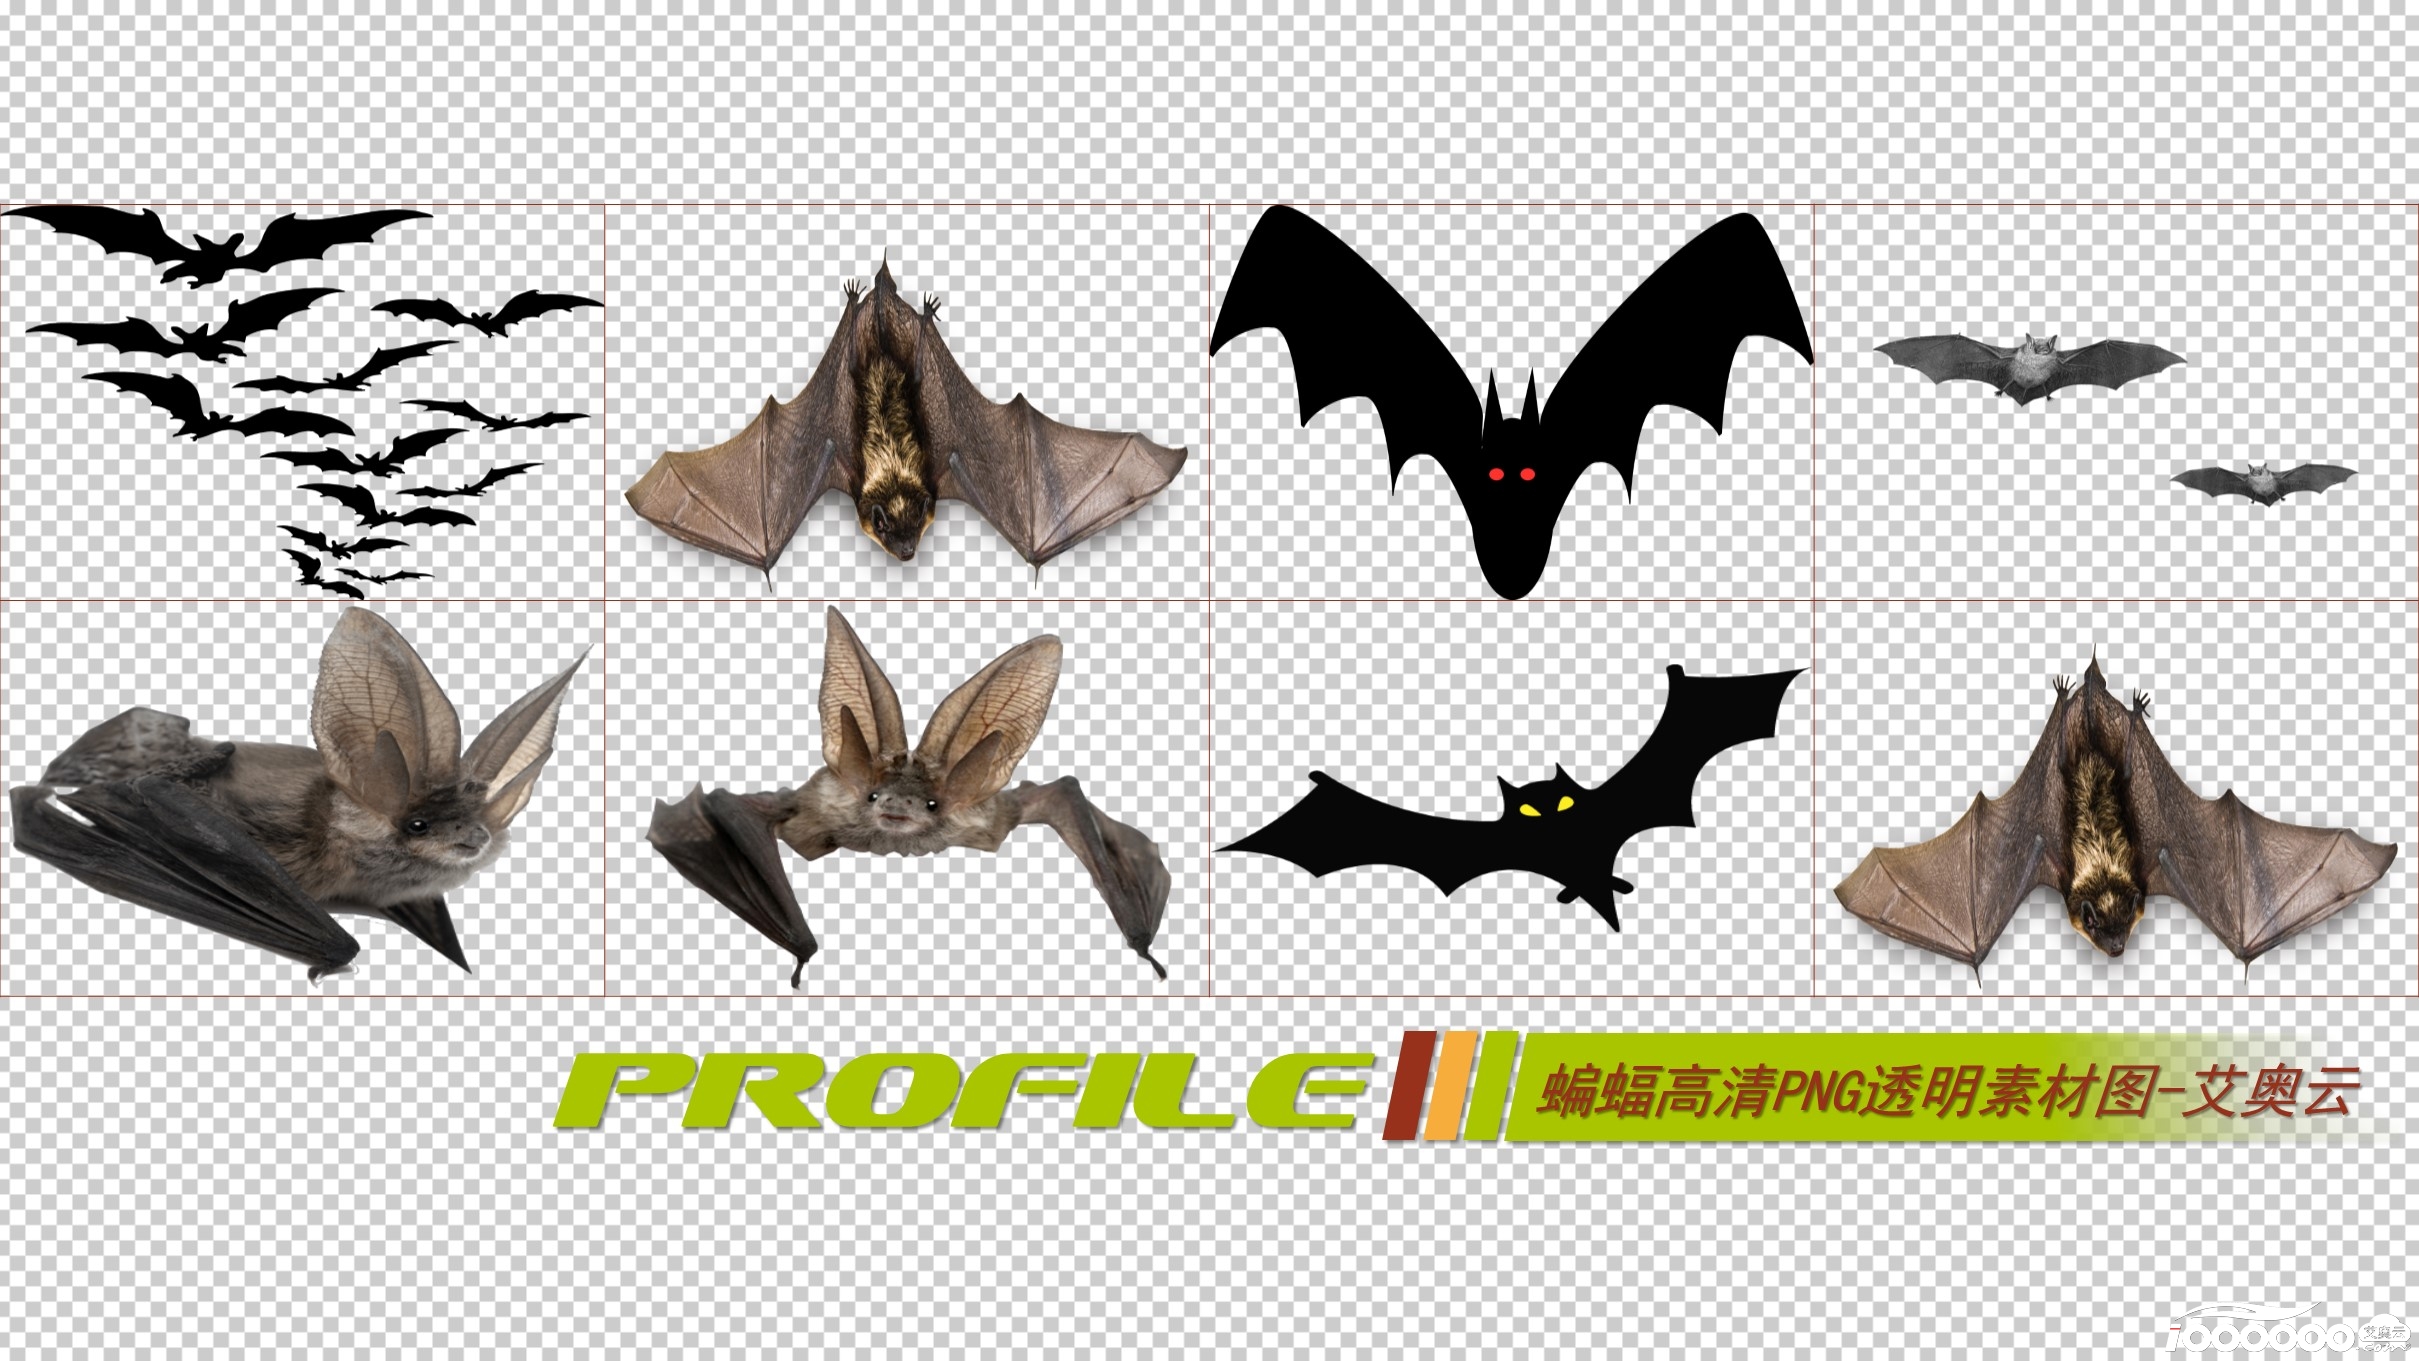 蝙蝠高清png透明图片图形素材打包免费下载 (6).JPG